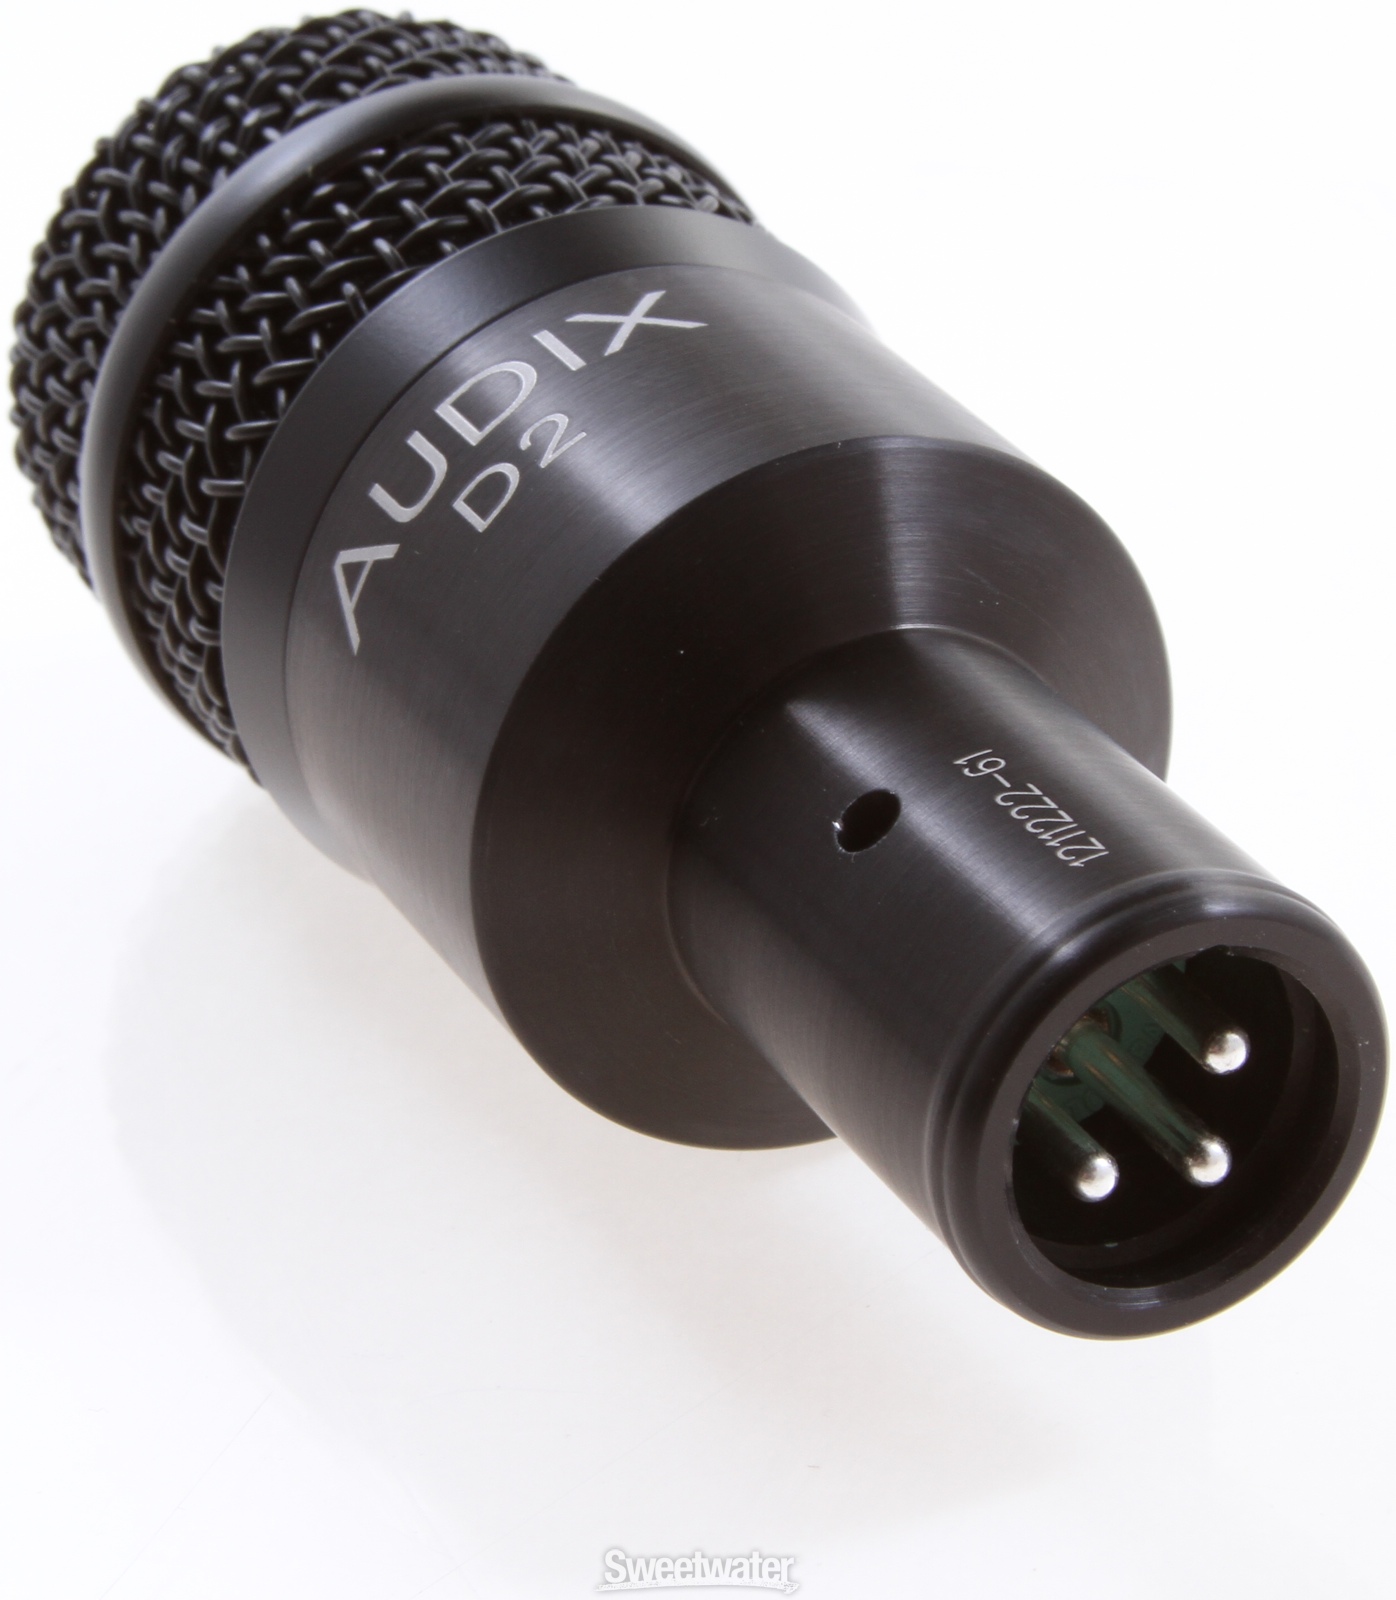 Audix D2 -  Instrument Microphone